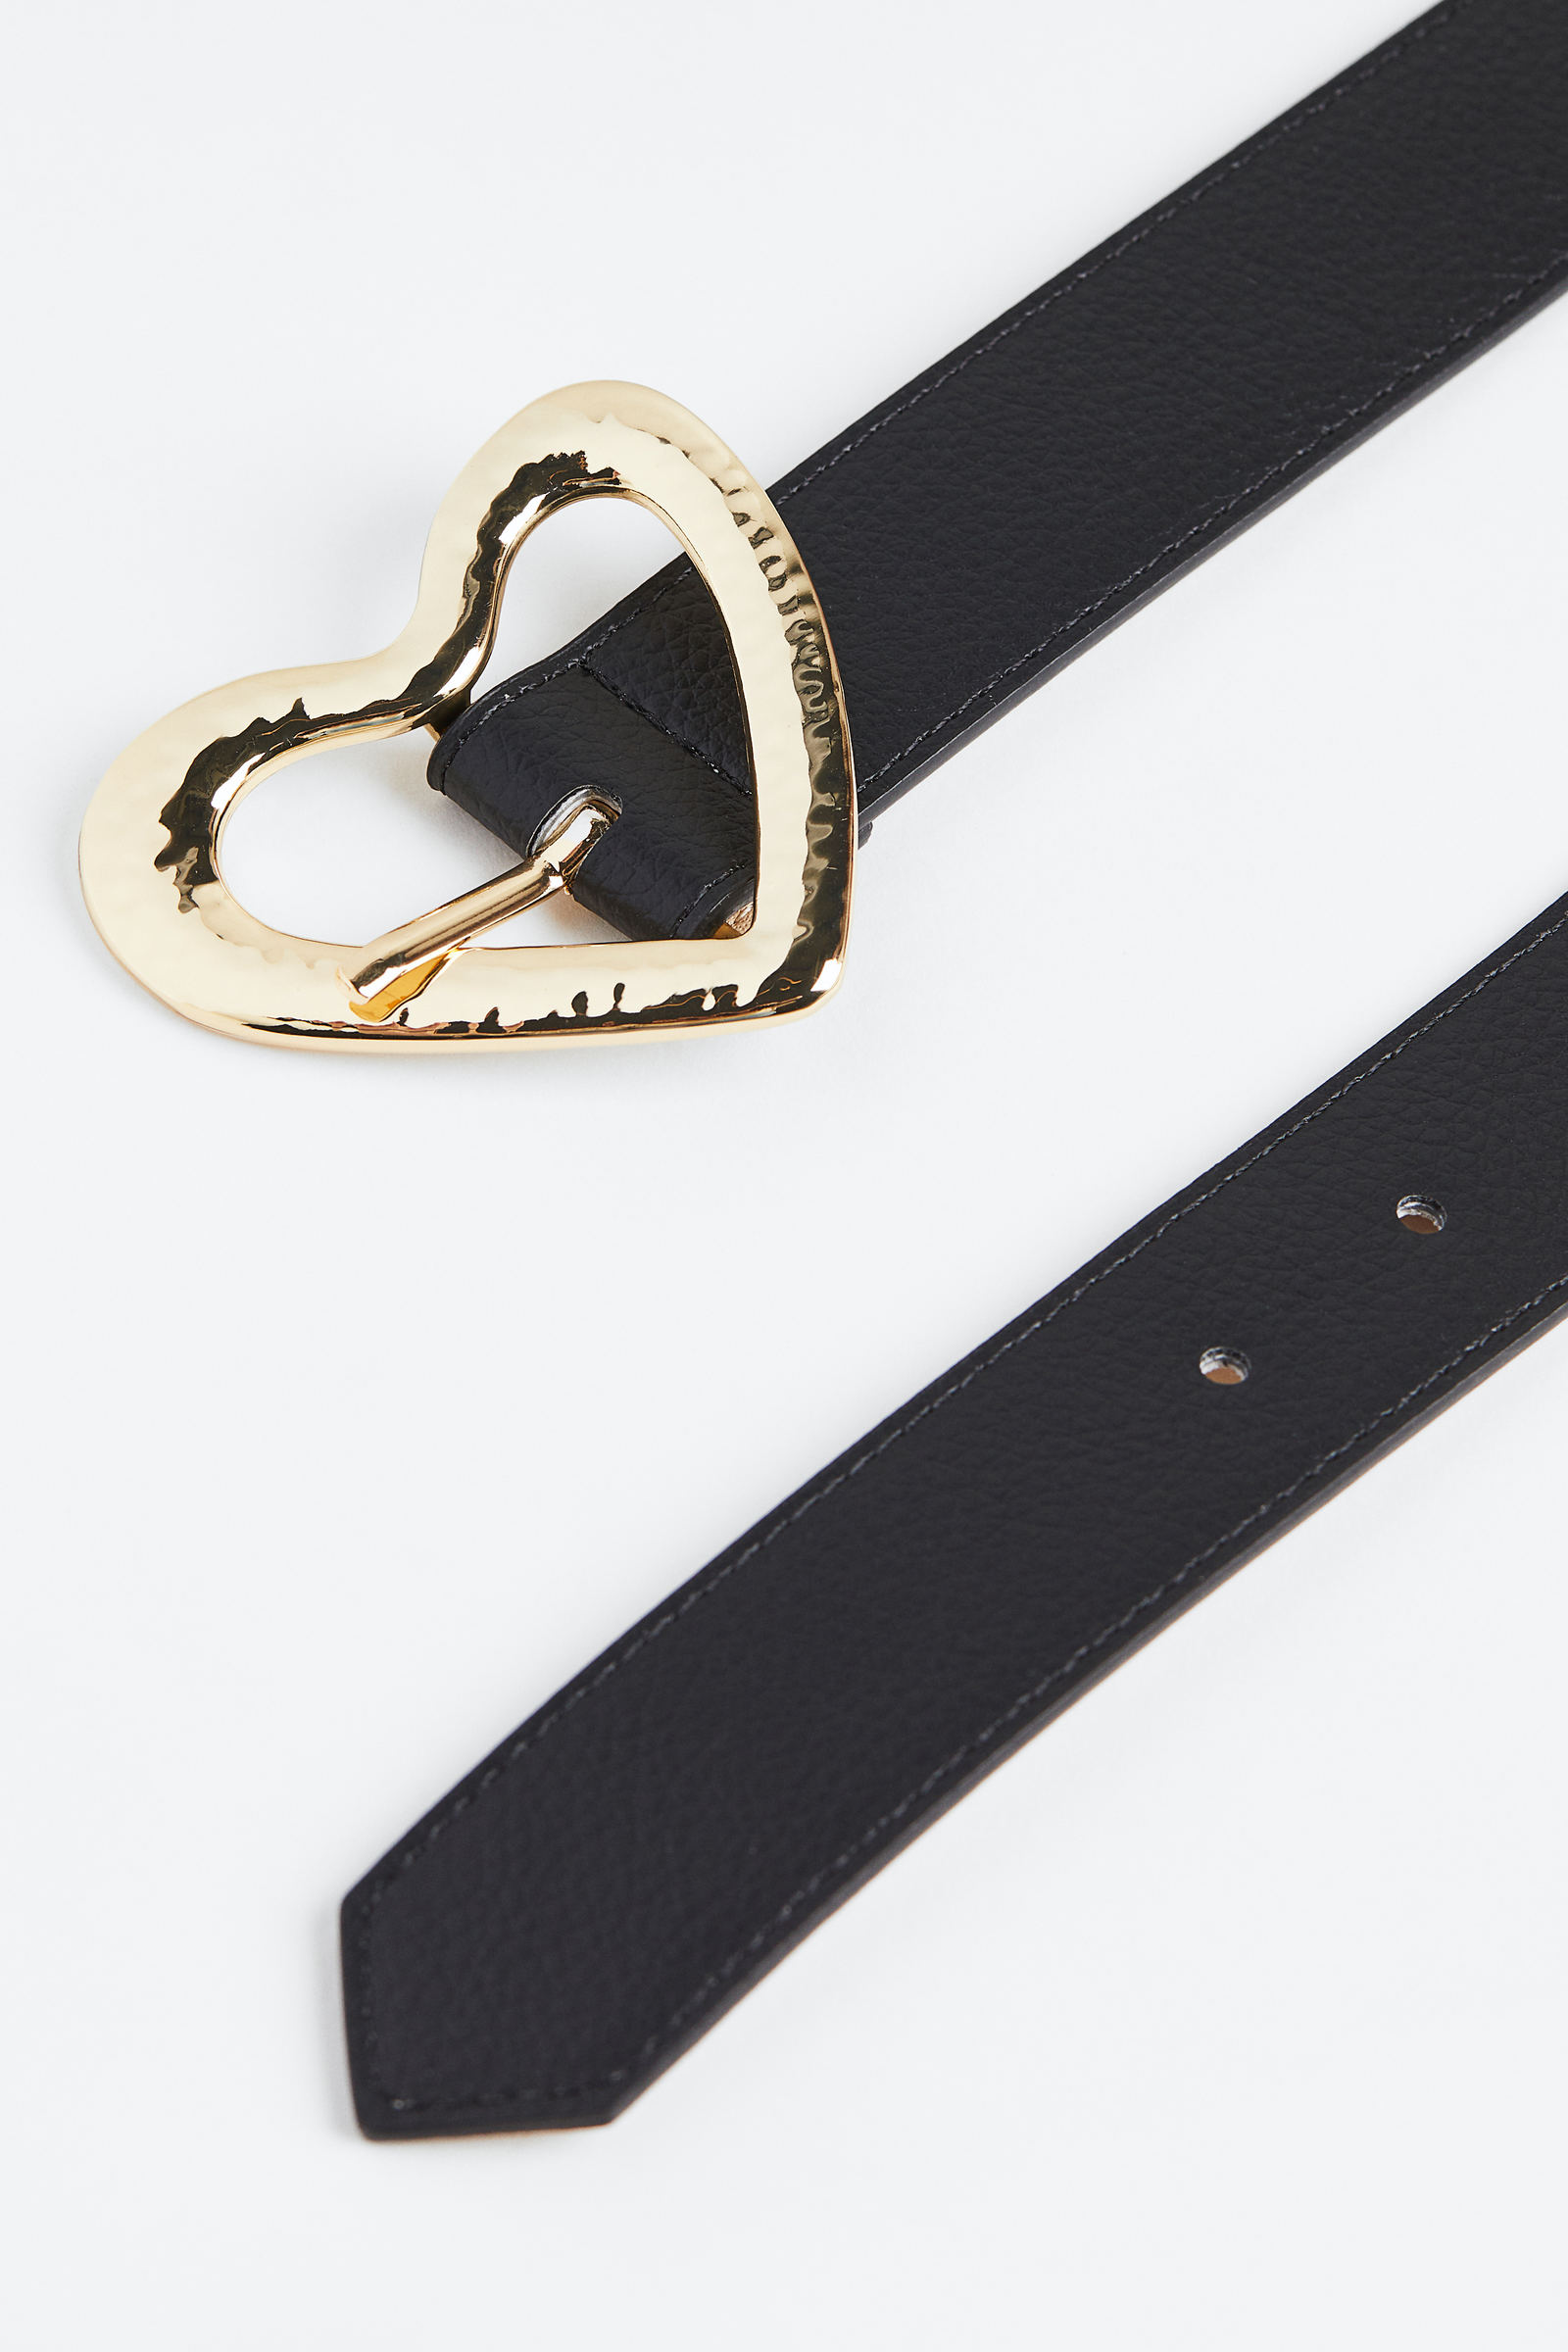 Maikun Cinturón de piel extraíble para mujer con hebilla de placa con letra  M, de 1.18 pulgada de ancho, para San Valentín